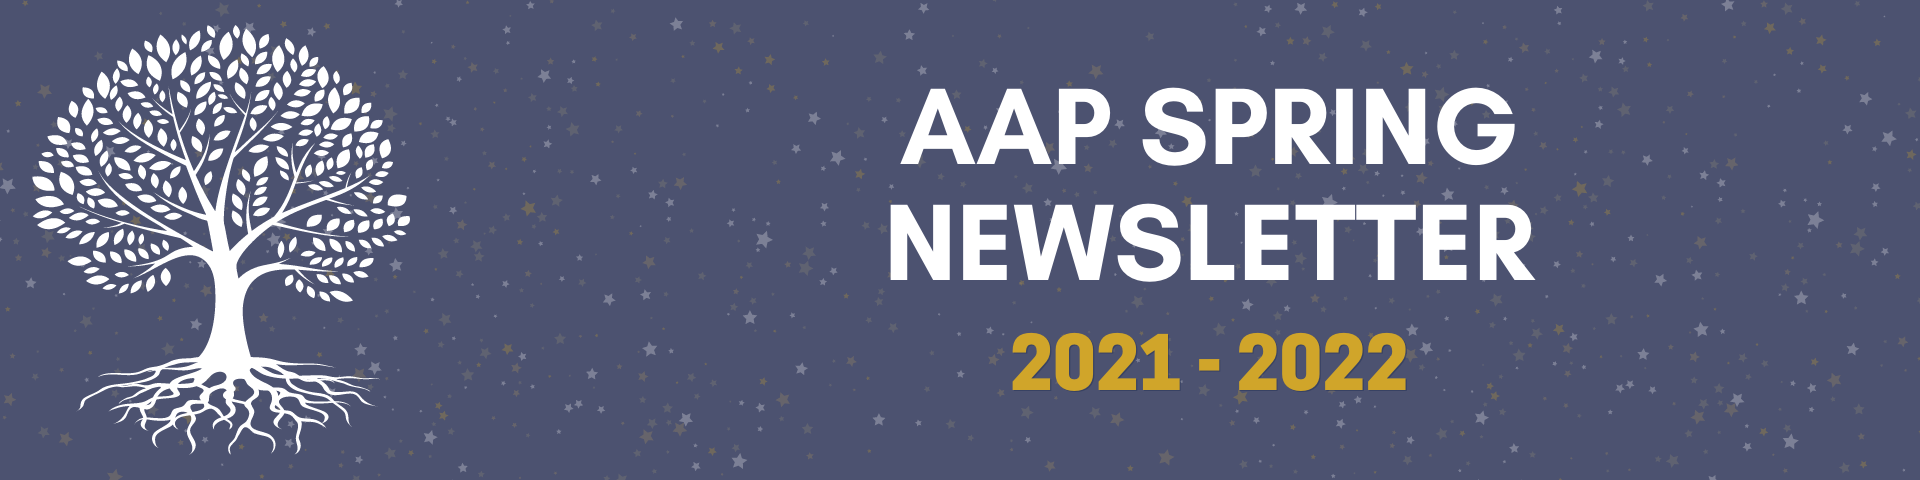 aap spring newsletter 2021 - 2022